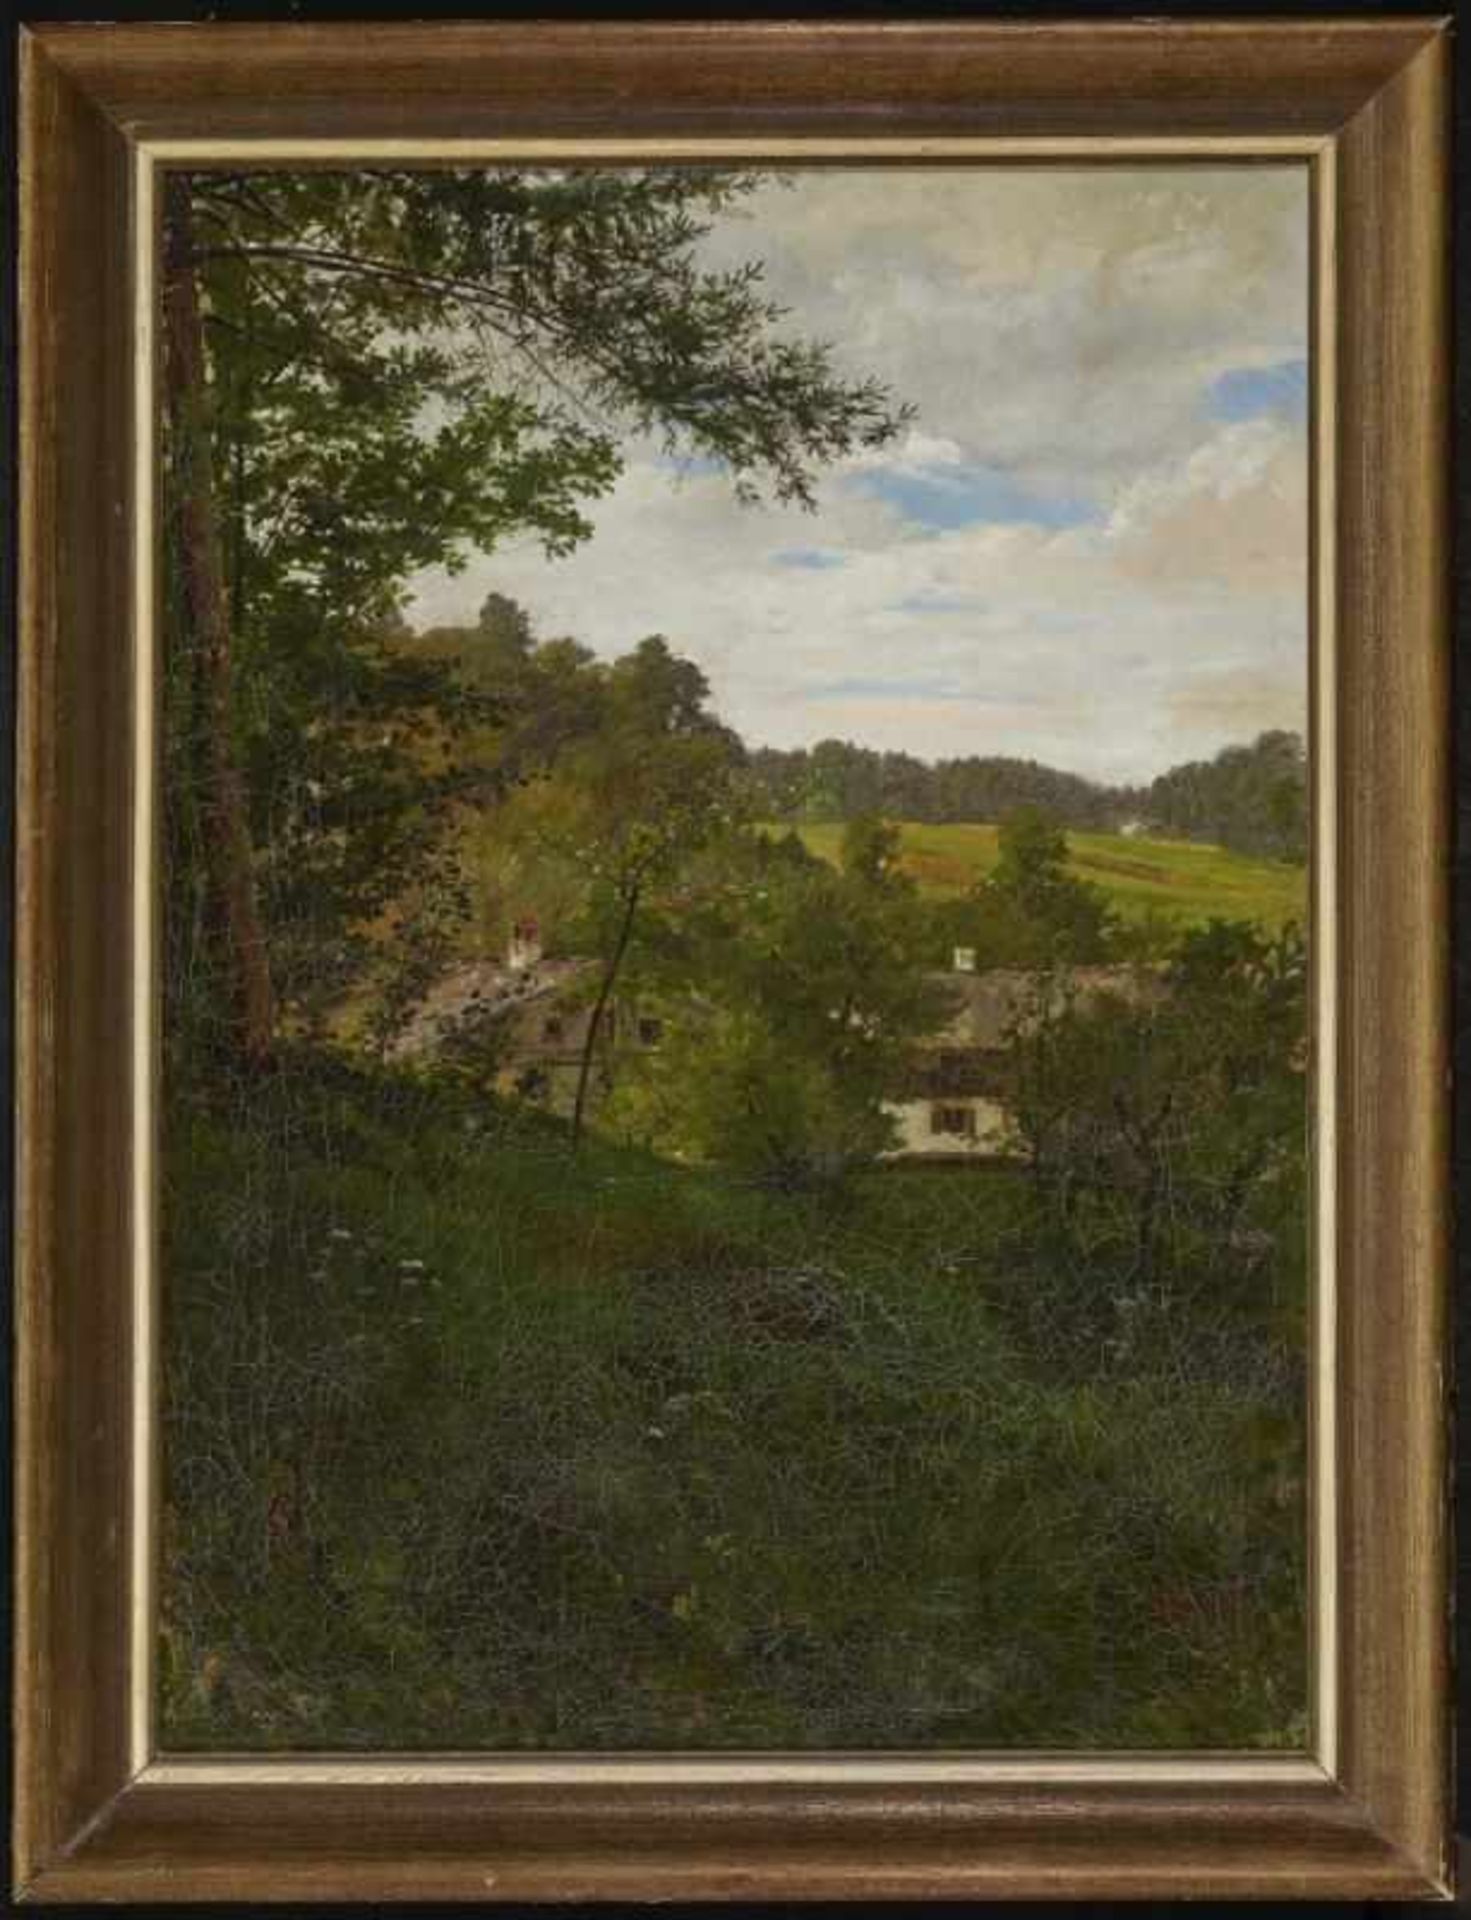 SPERL, JOHANN 1840 Buch b. Fürth - 1914 Bad Aibling Oberbayerische Landschaft mit Bauerngehöft R. u. - Bild 2 aus 2